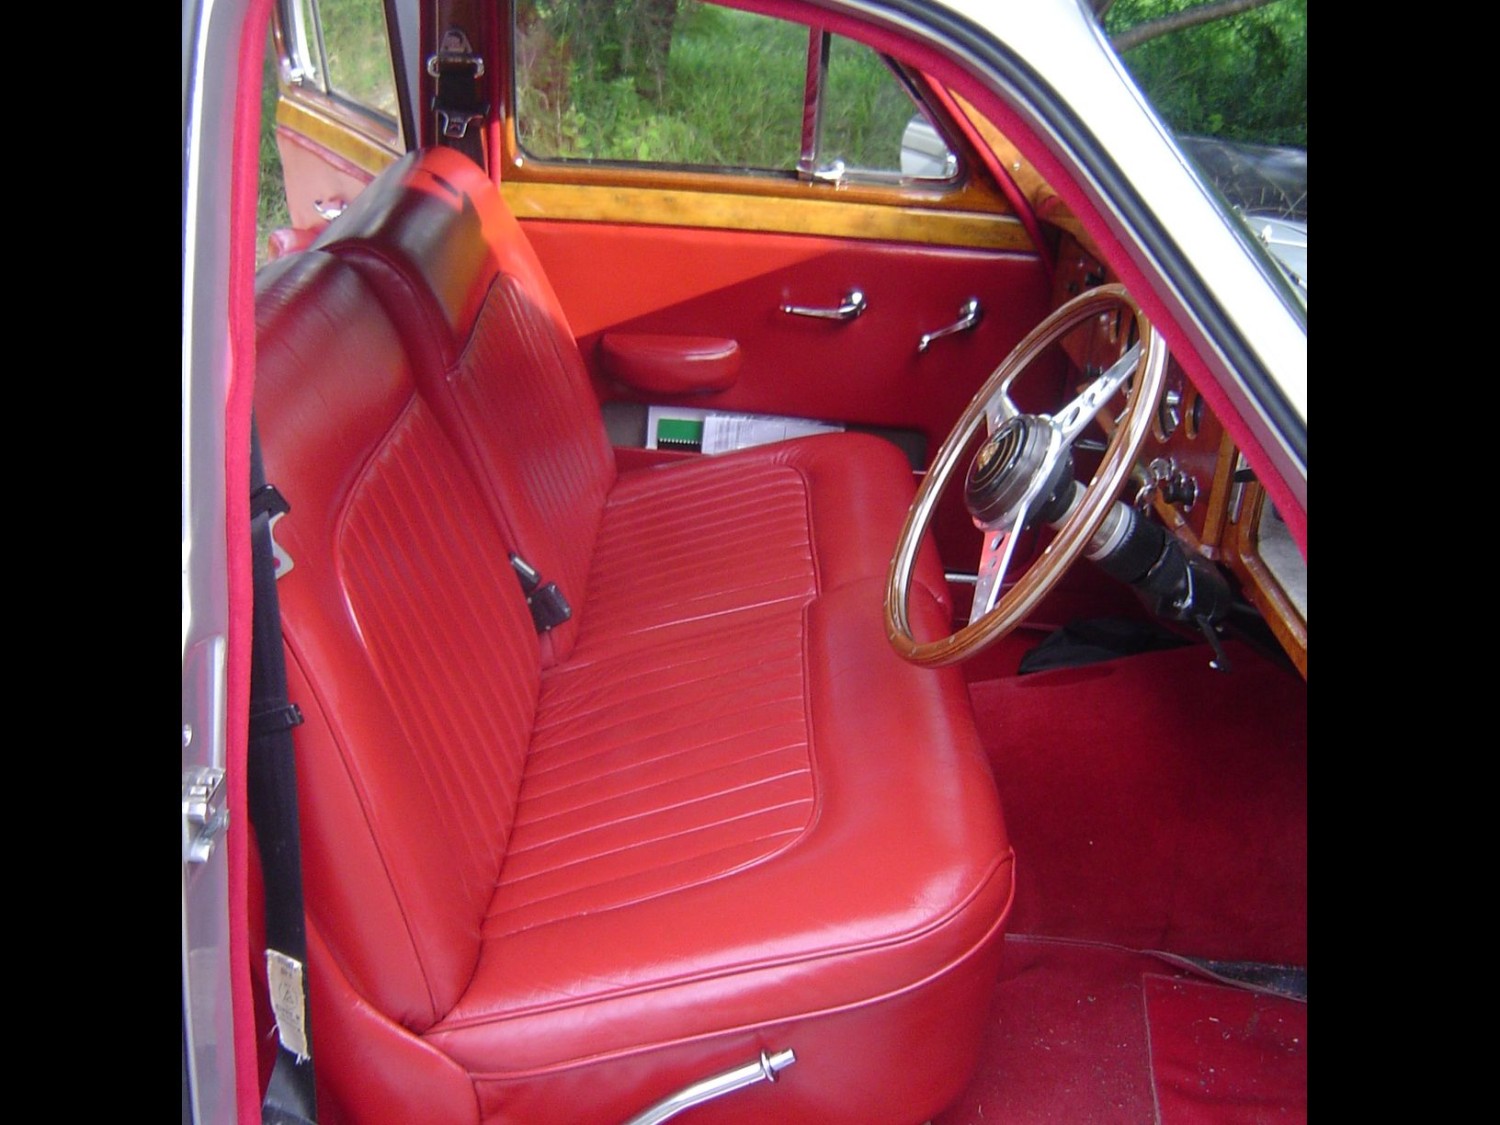 1958 Jaguar MK1